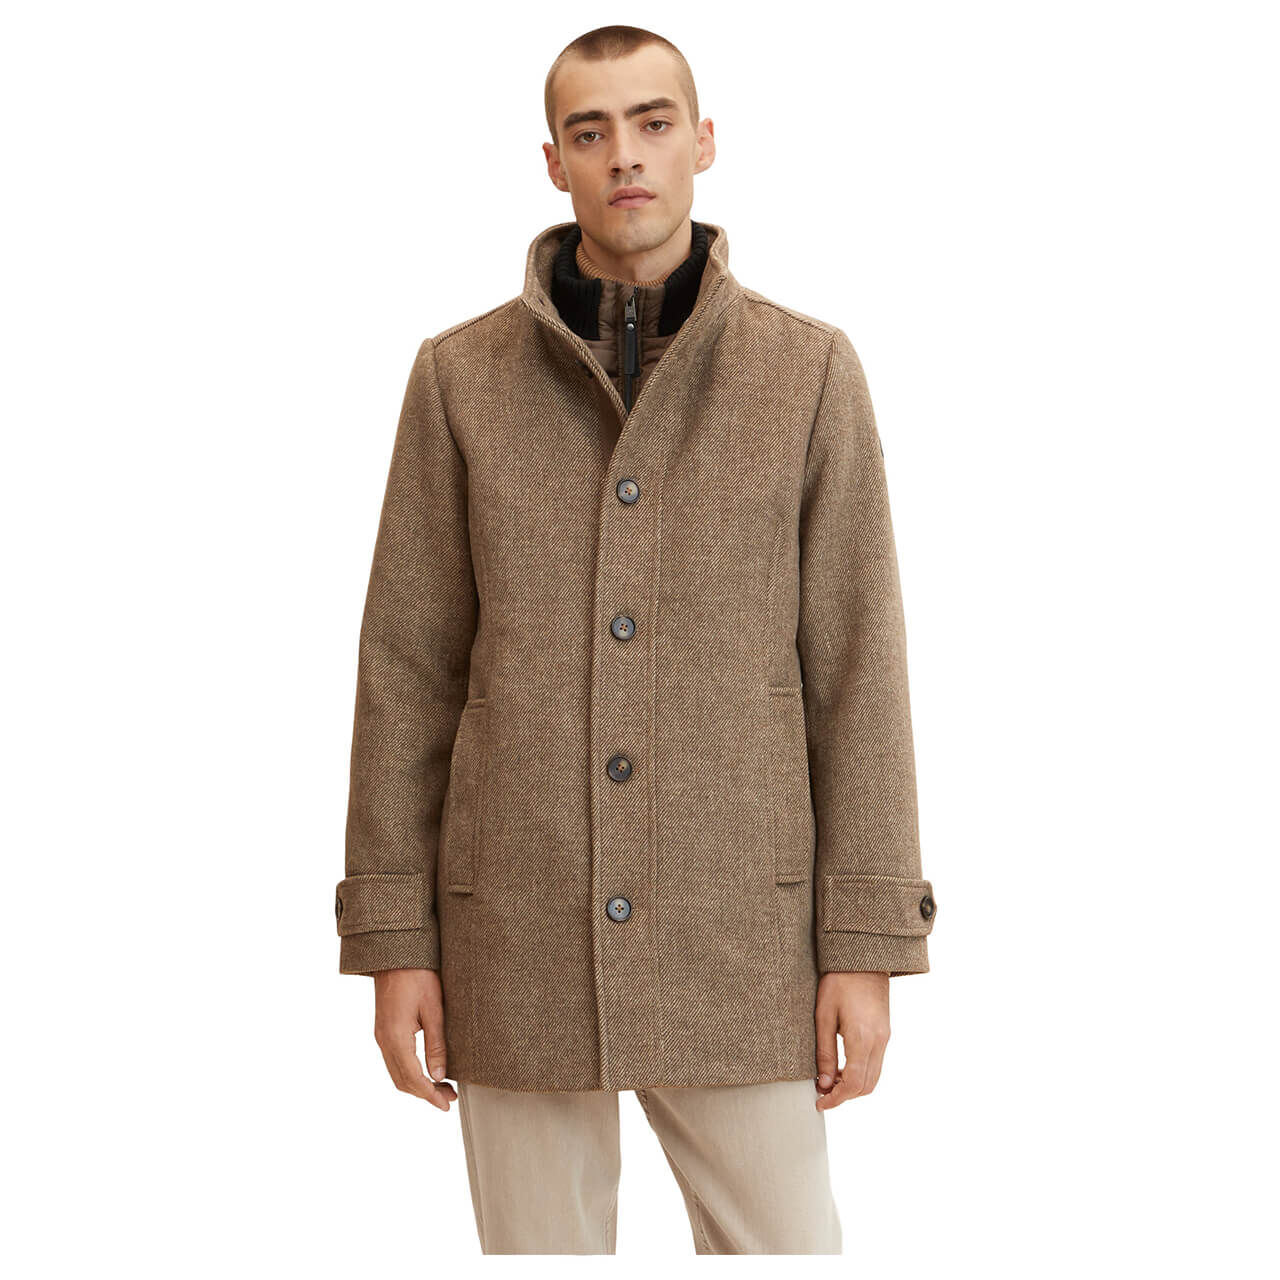 Tom Tailor Herren Mantel Wool Coat 2 in 1 brown chinchilla